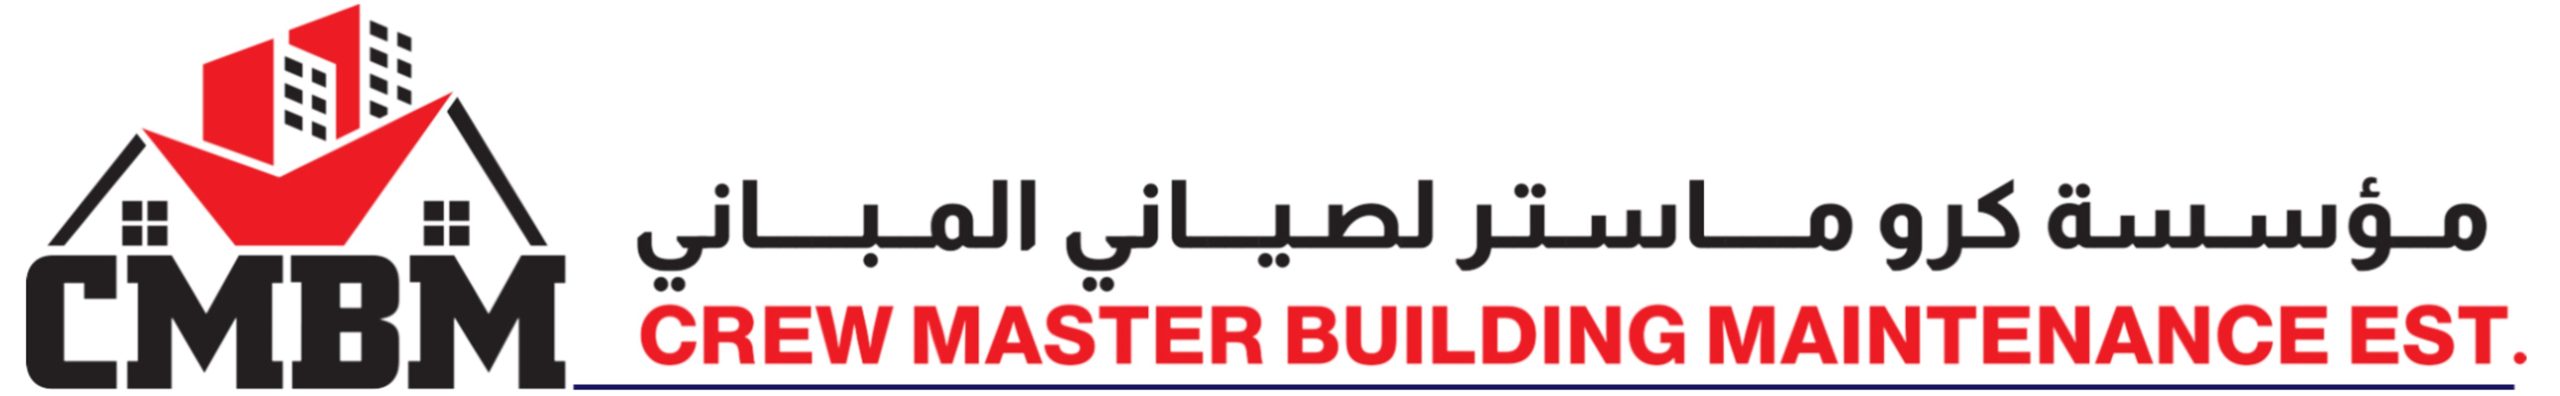 Crew Master Building Contracting Est. Dubai